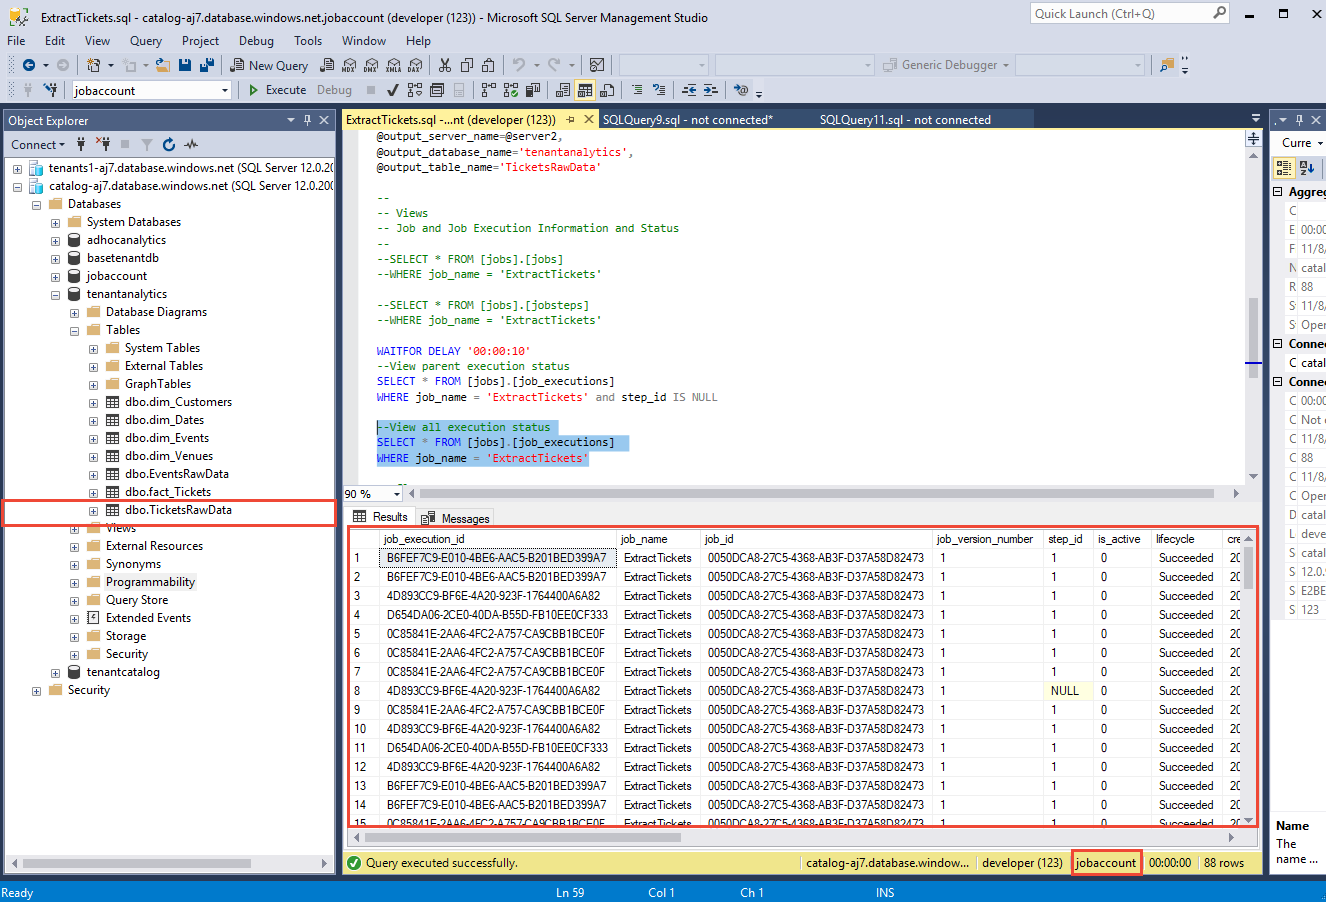 Lo screenshot mostra il database ExtractTickets con il dbo TicketsRawData selezionato in Esplora oggetti.